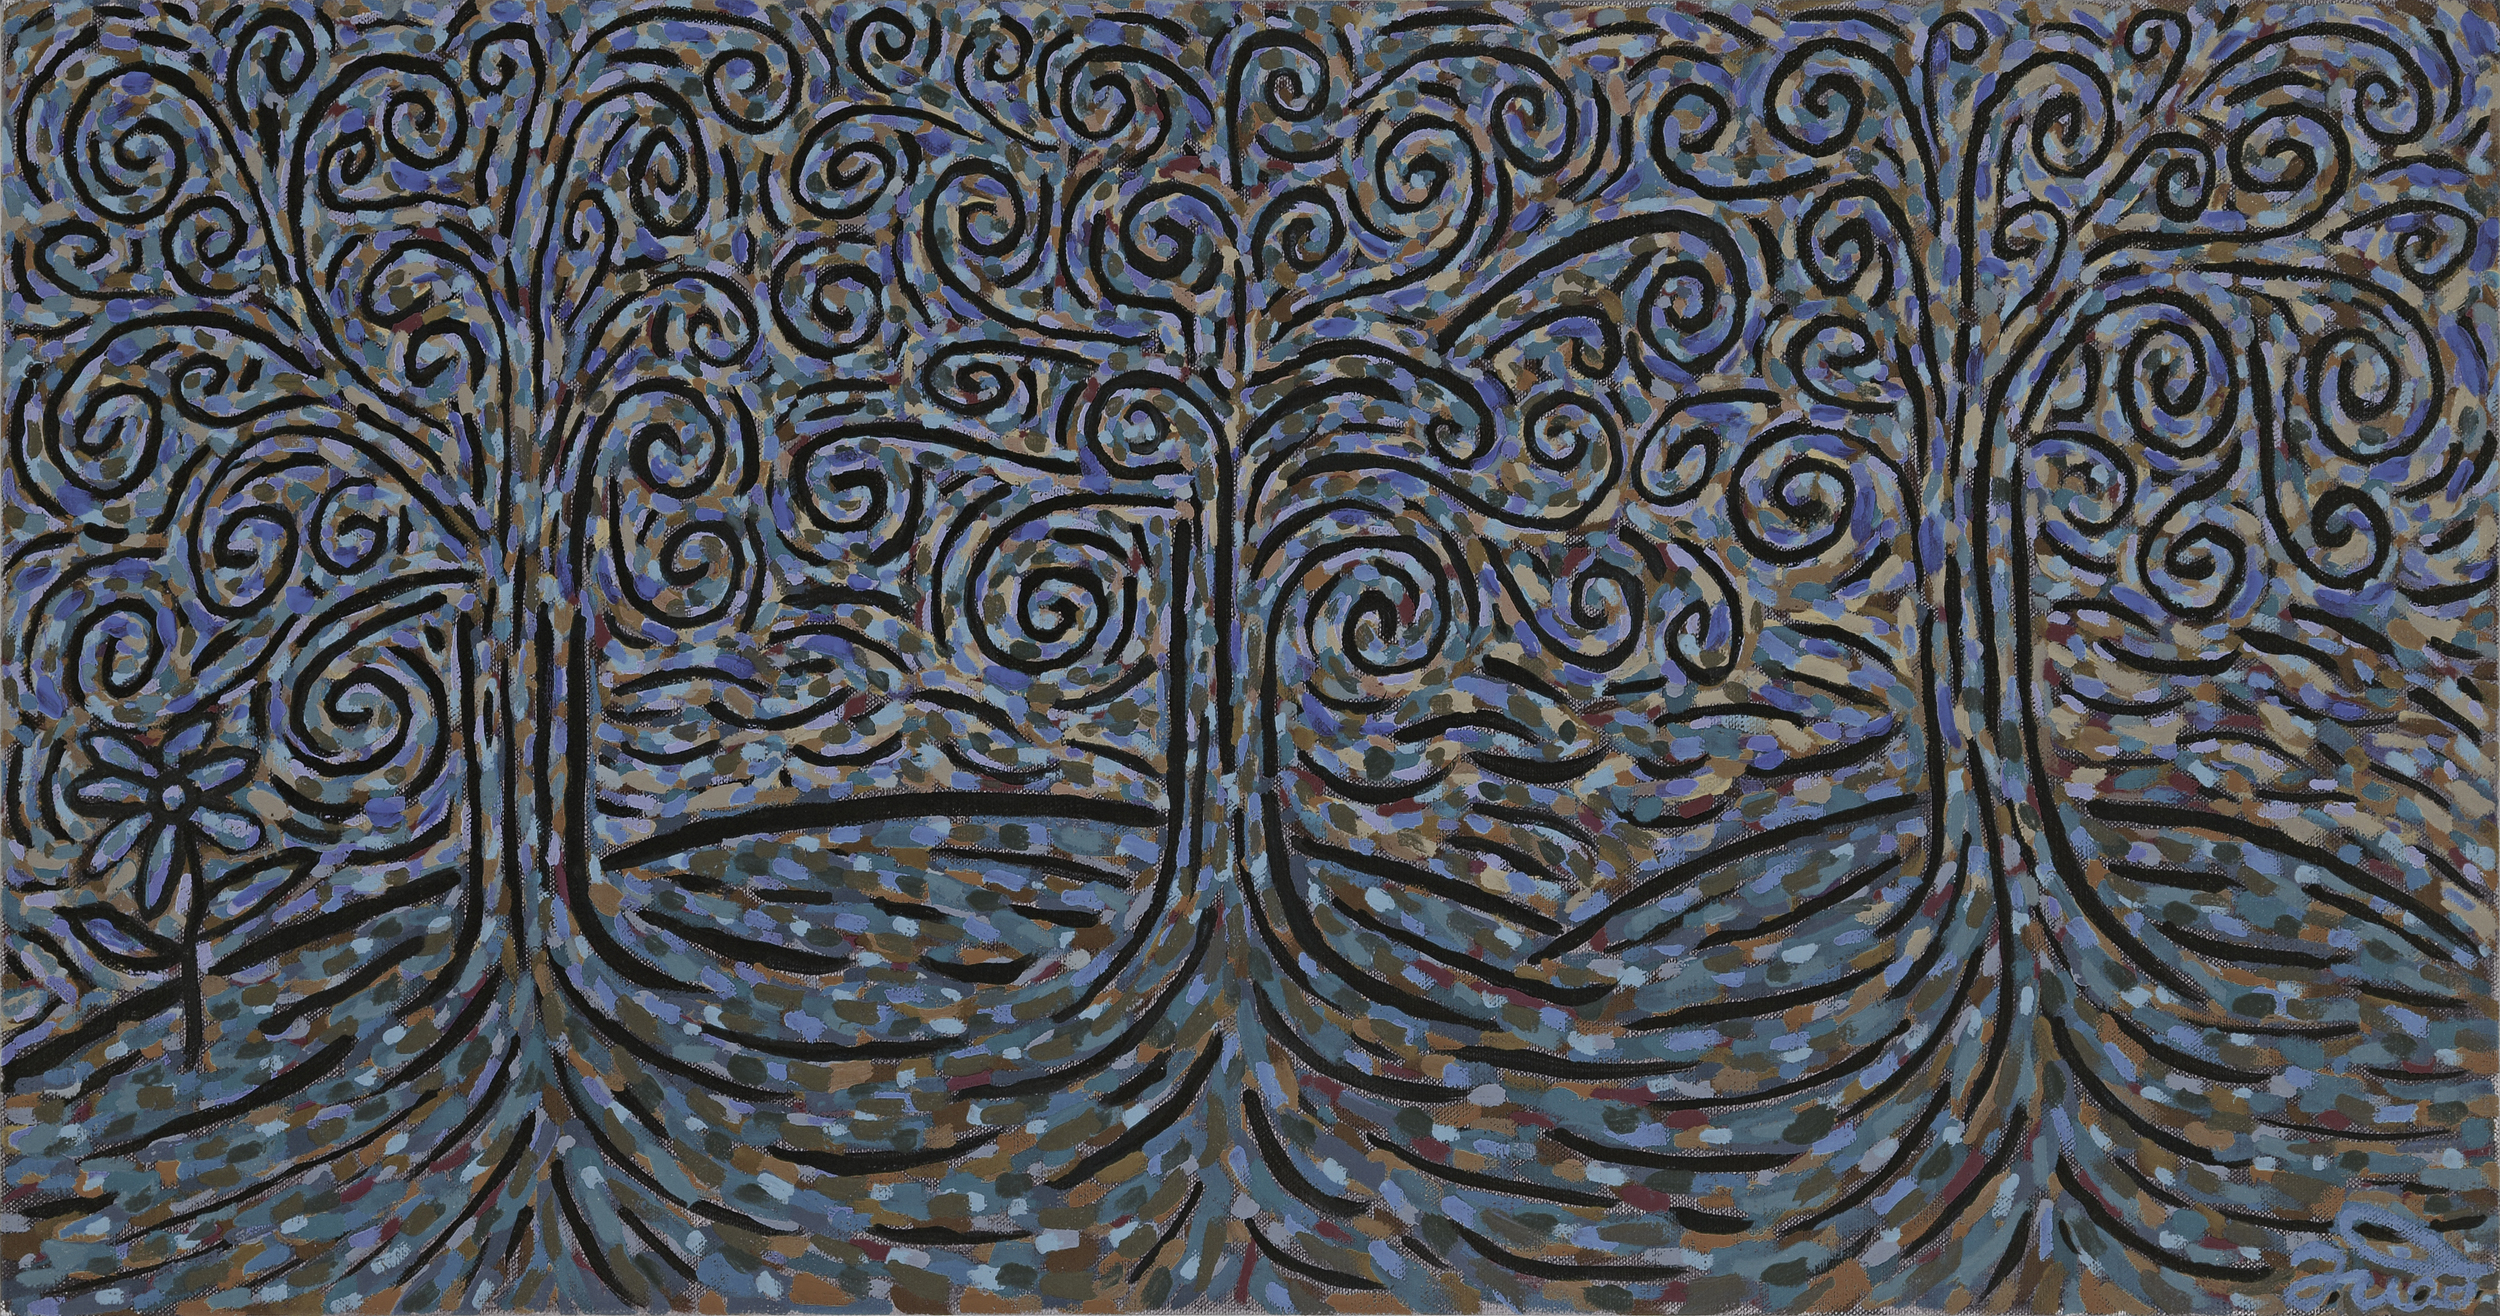 Three Trees - 2011